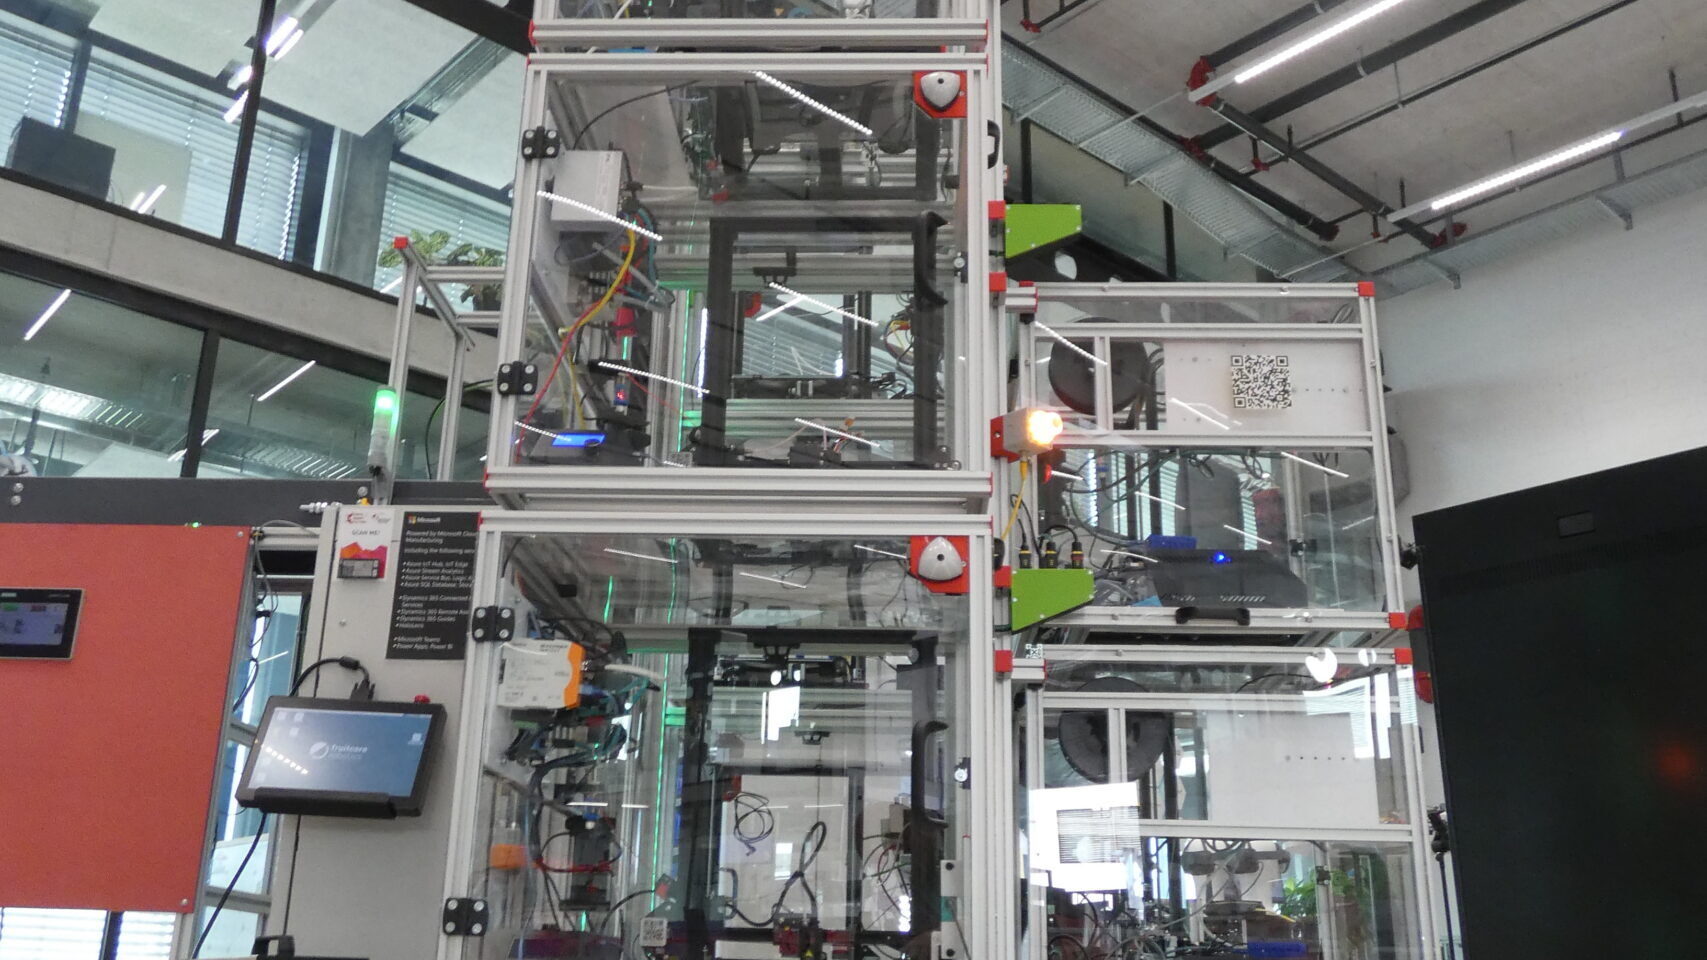 3D tlačiareň na montážnej linke dronov v Innovation Park v Biel/Bienne